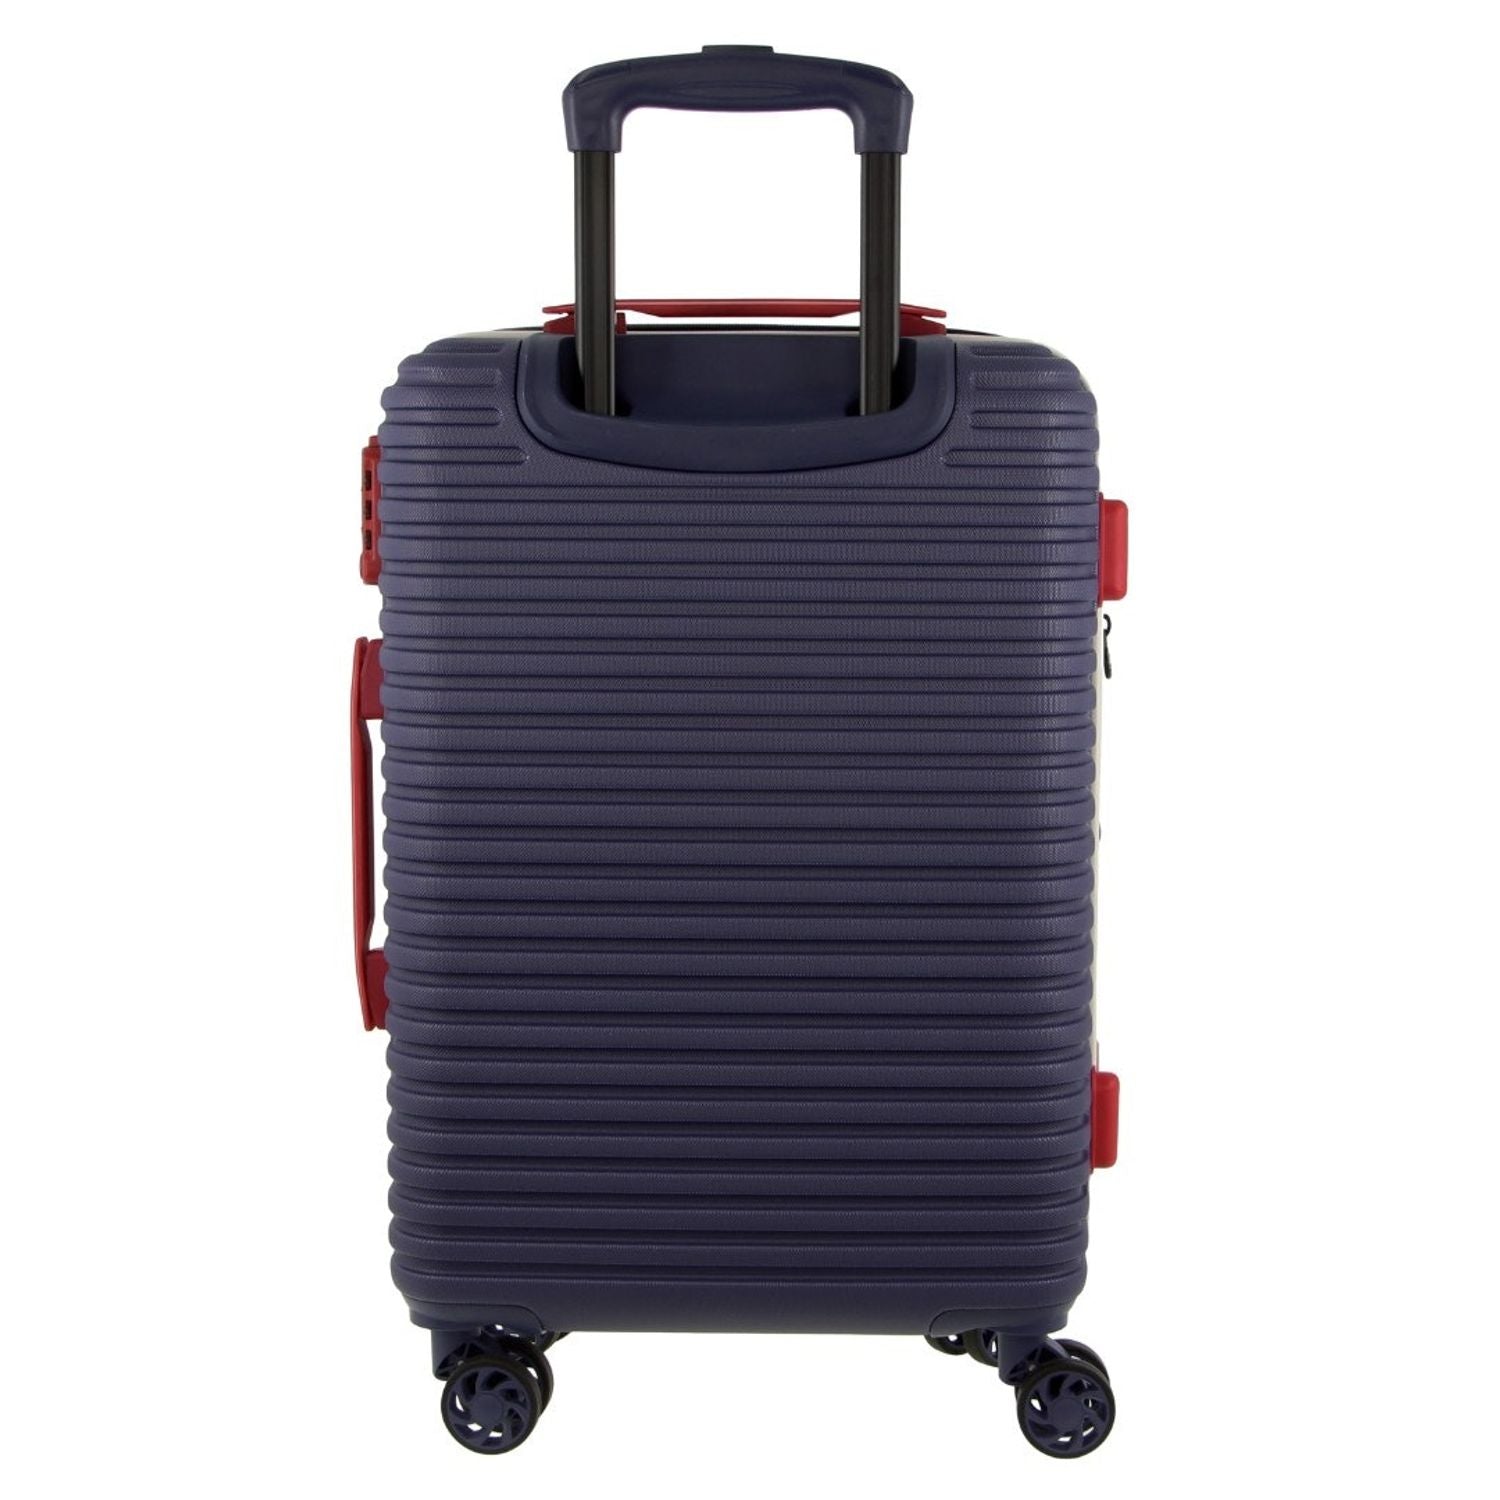 GAP 4 Wheel Hardcase Suitcase - Large Navy